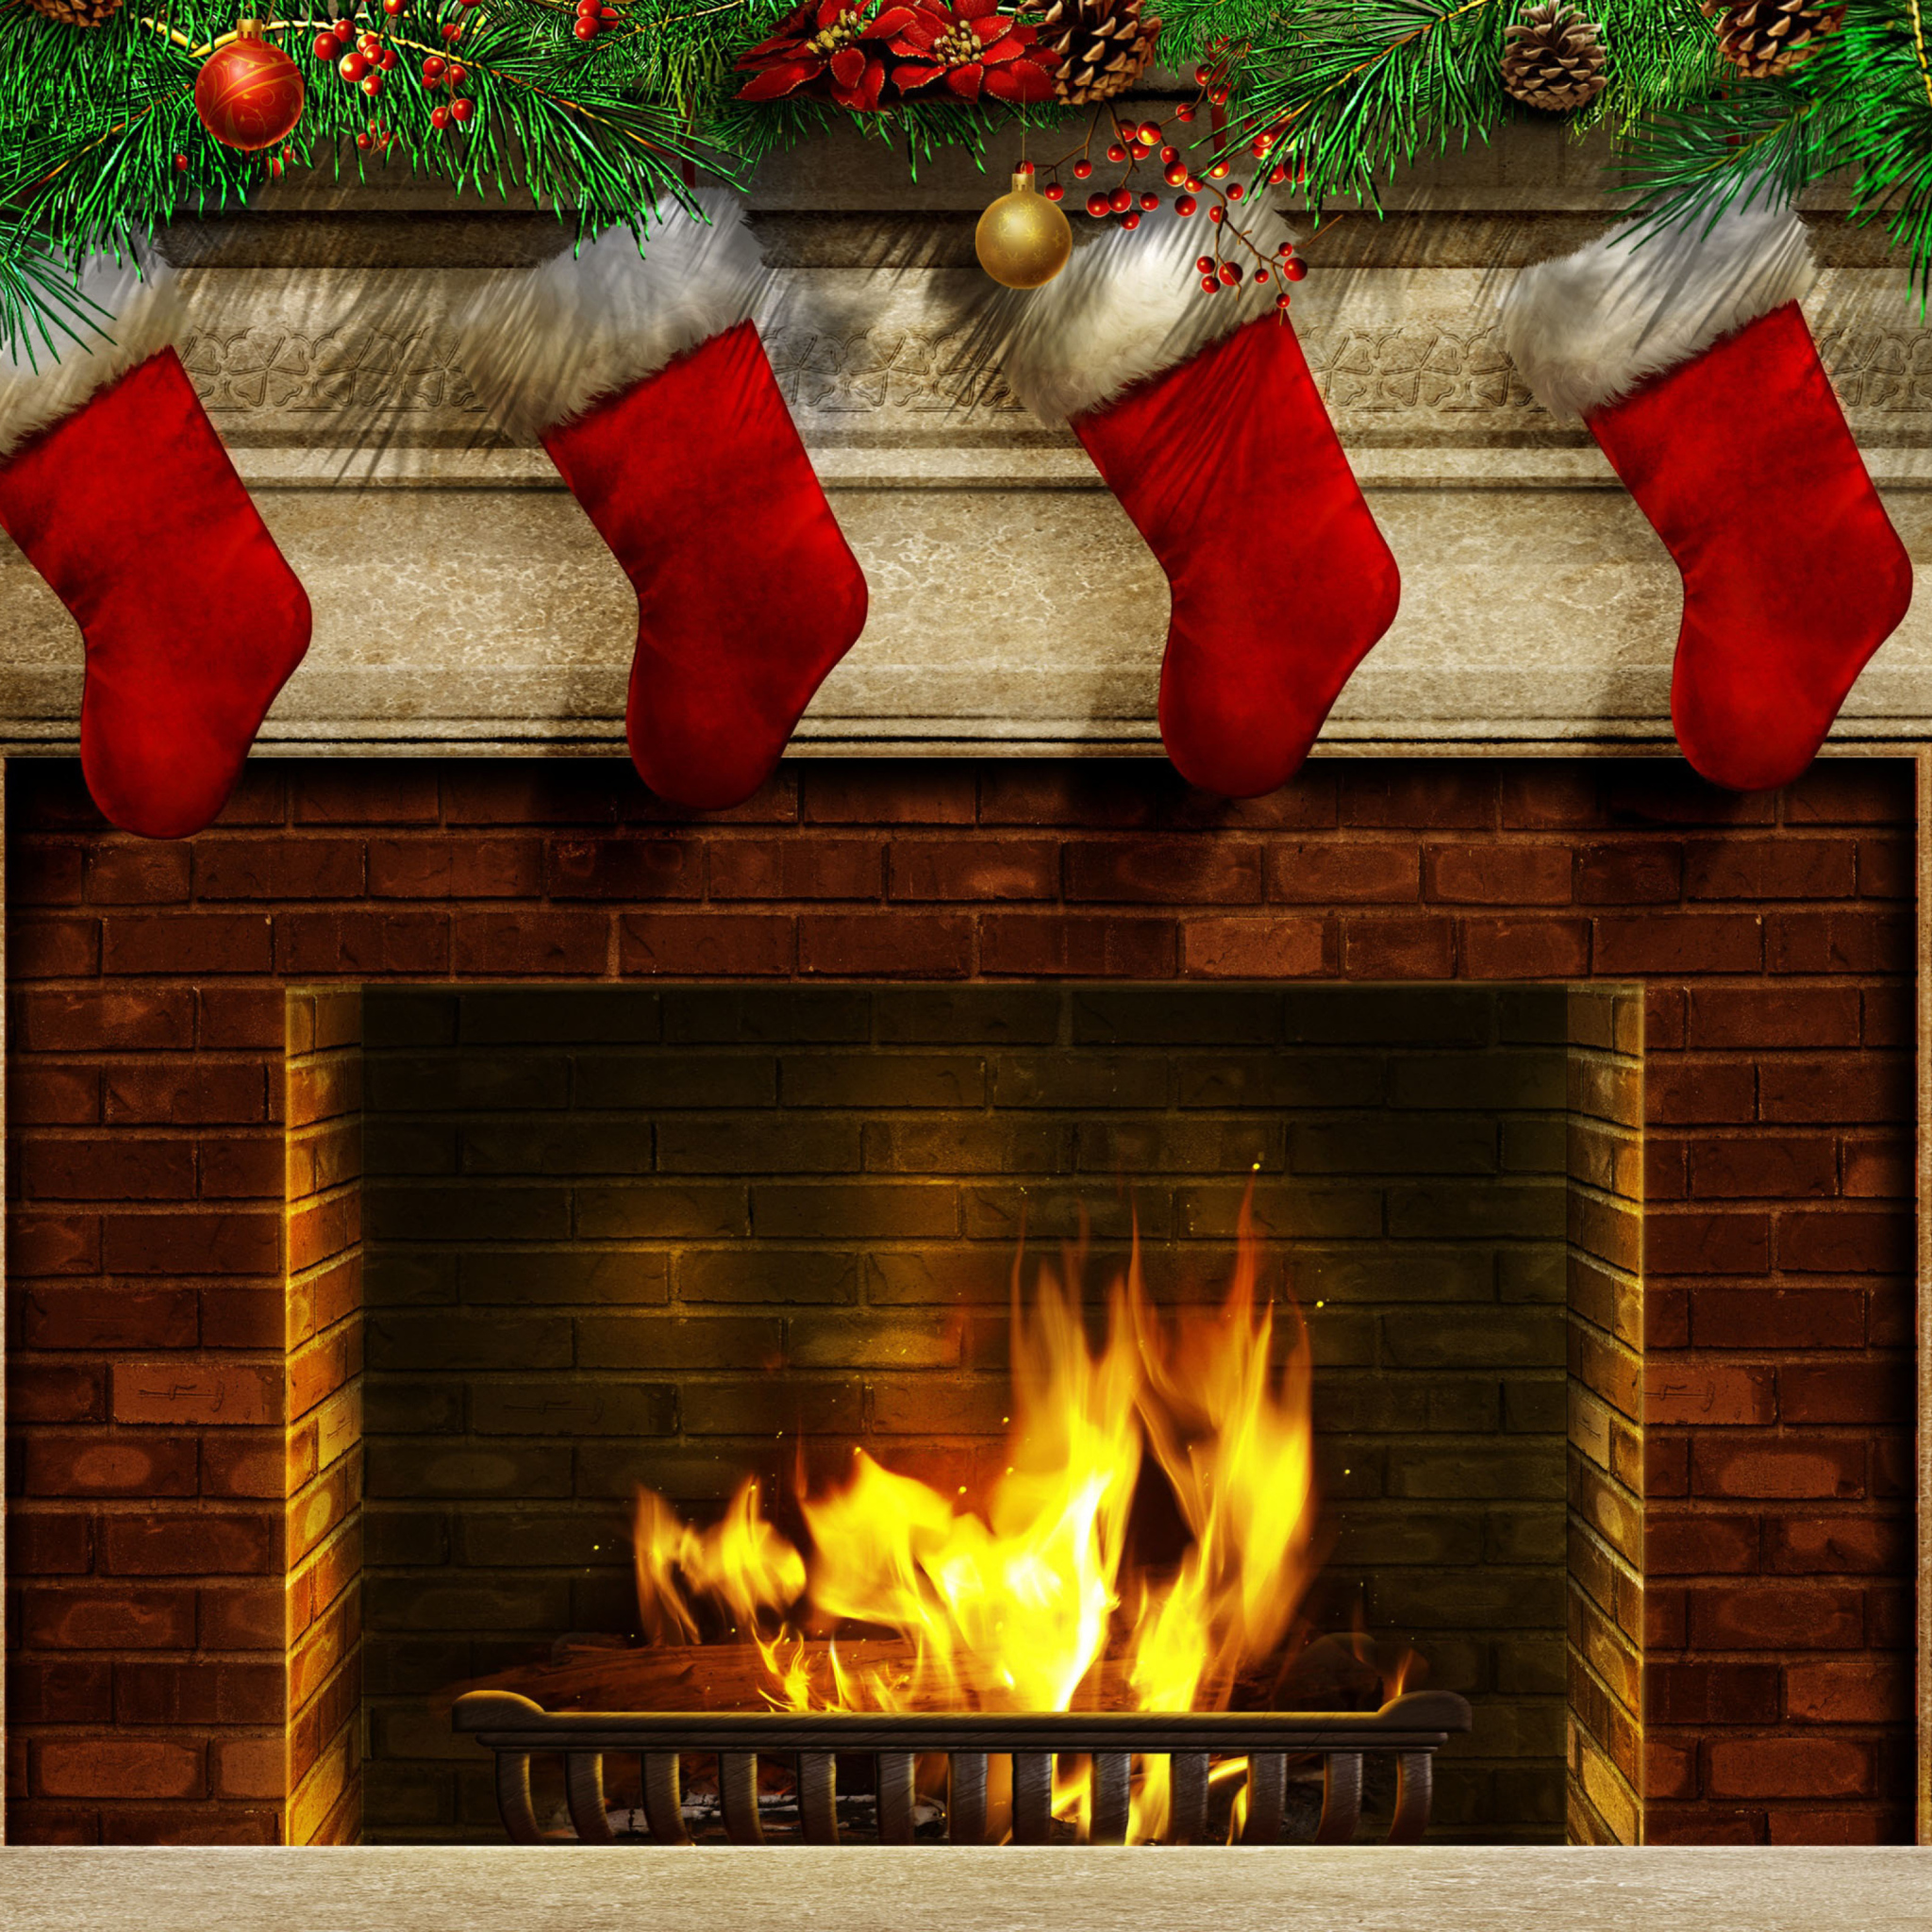 Fireplace And Christmas Socks wallpaper 2048x2048